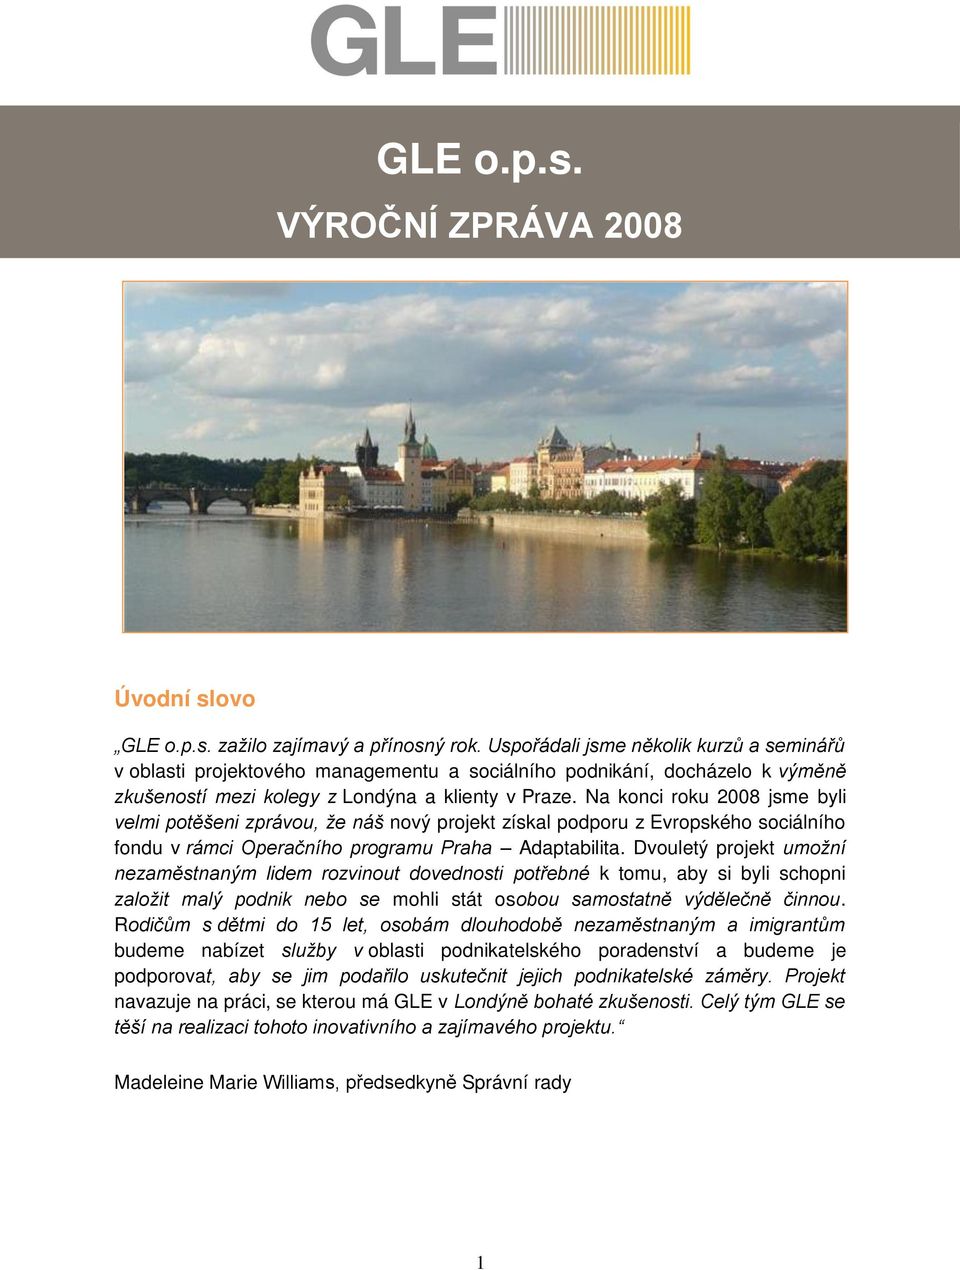 Na konci roku 2008 jsme byli velmi potěšeni zprávou, že náš nový projekt získal podporu z Evropského sociálního fondu v rámci Operačního programu Praha Adaptabilita.